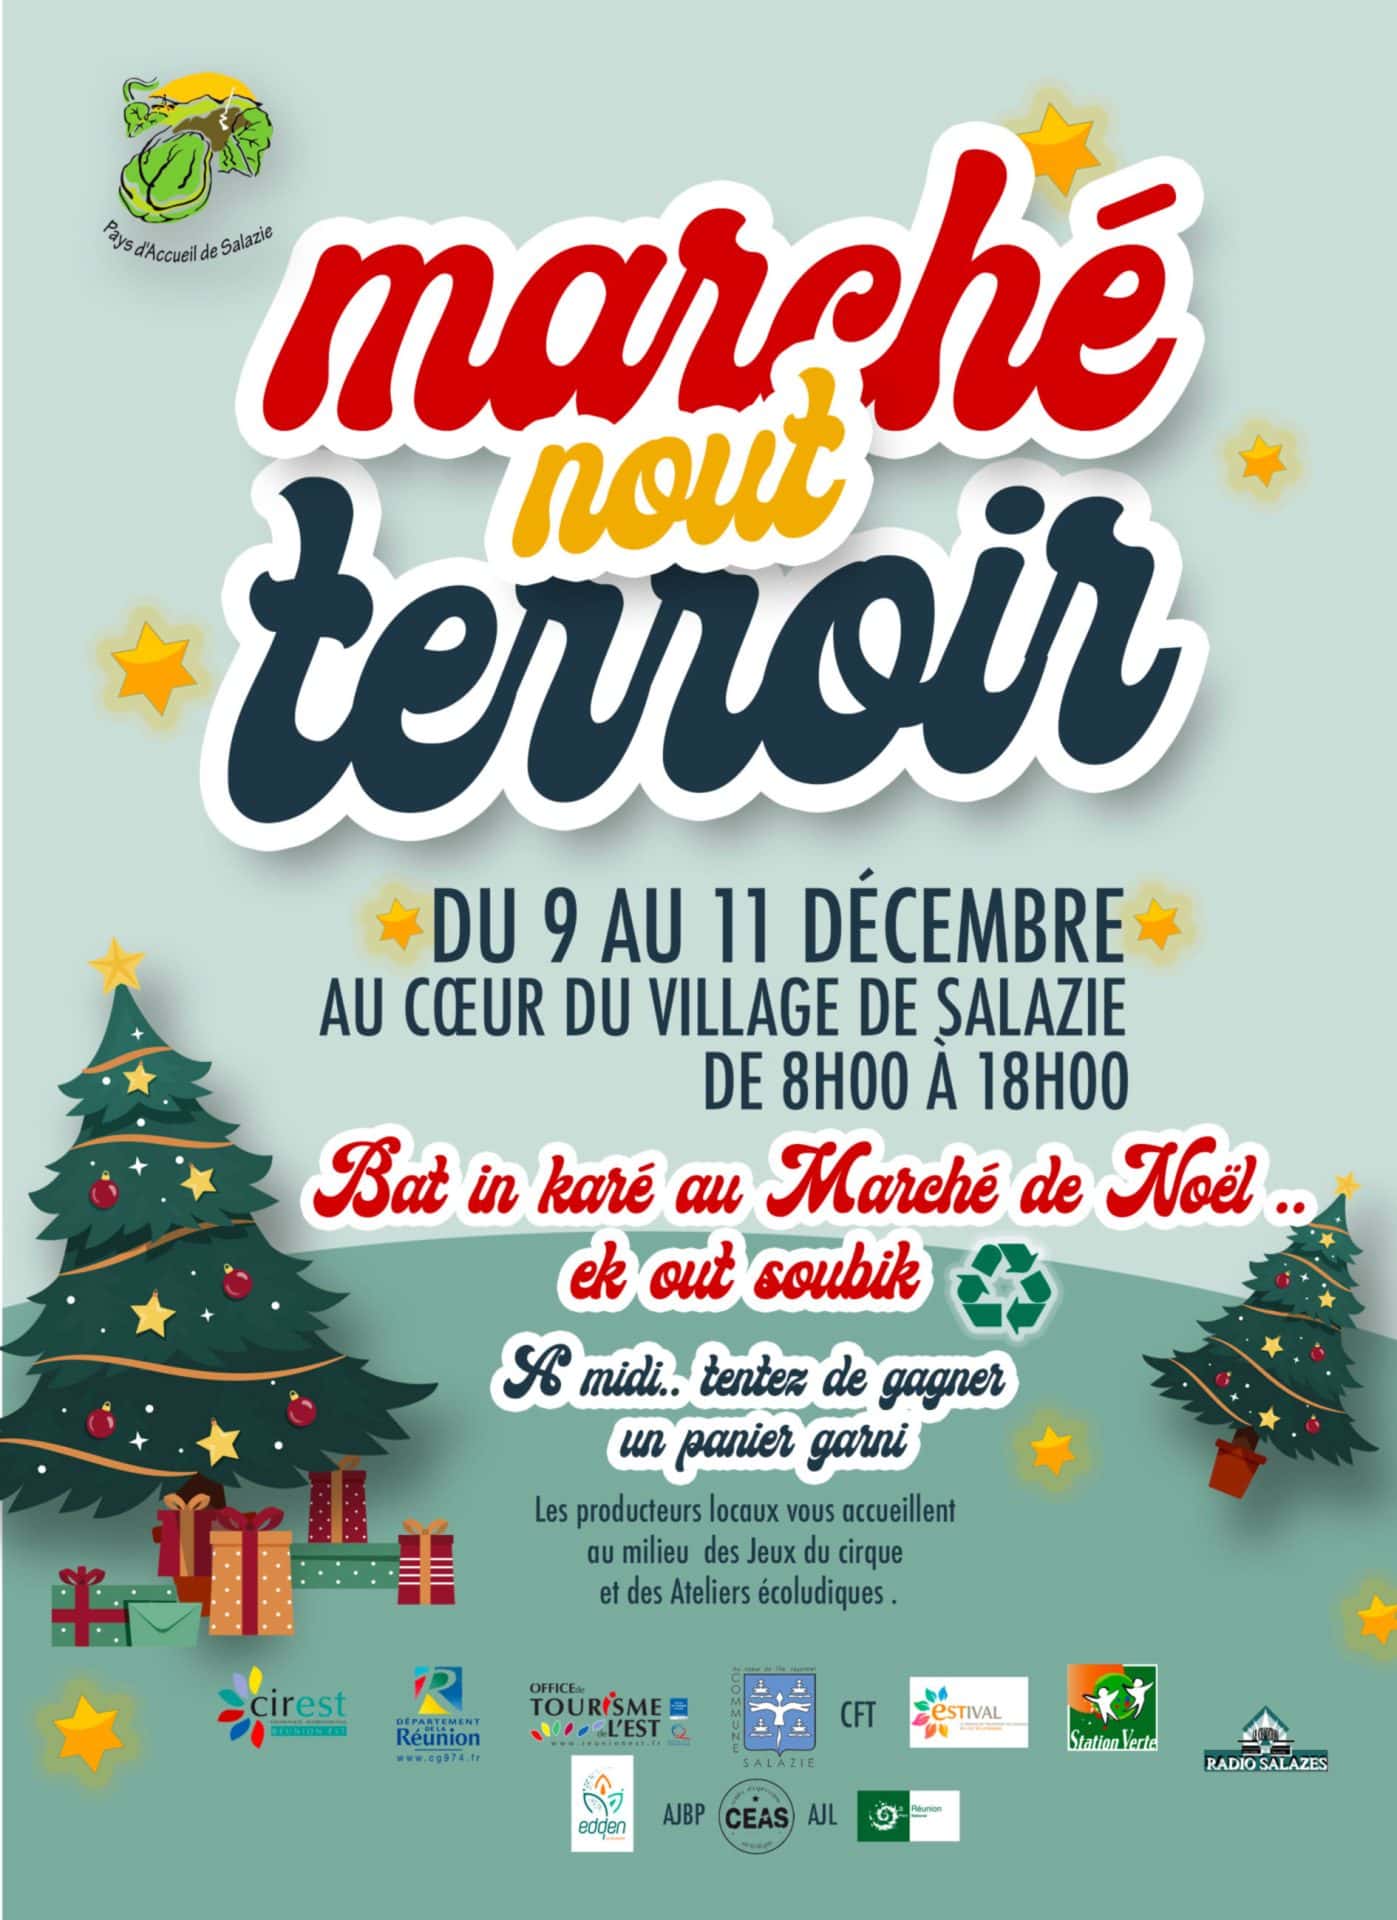 You are currently viewing Marché de Noël de Salazie